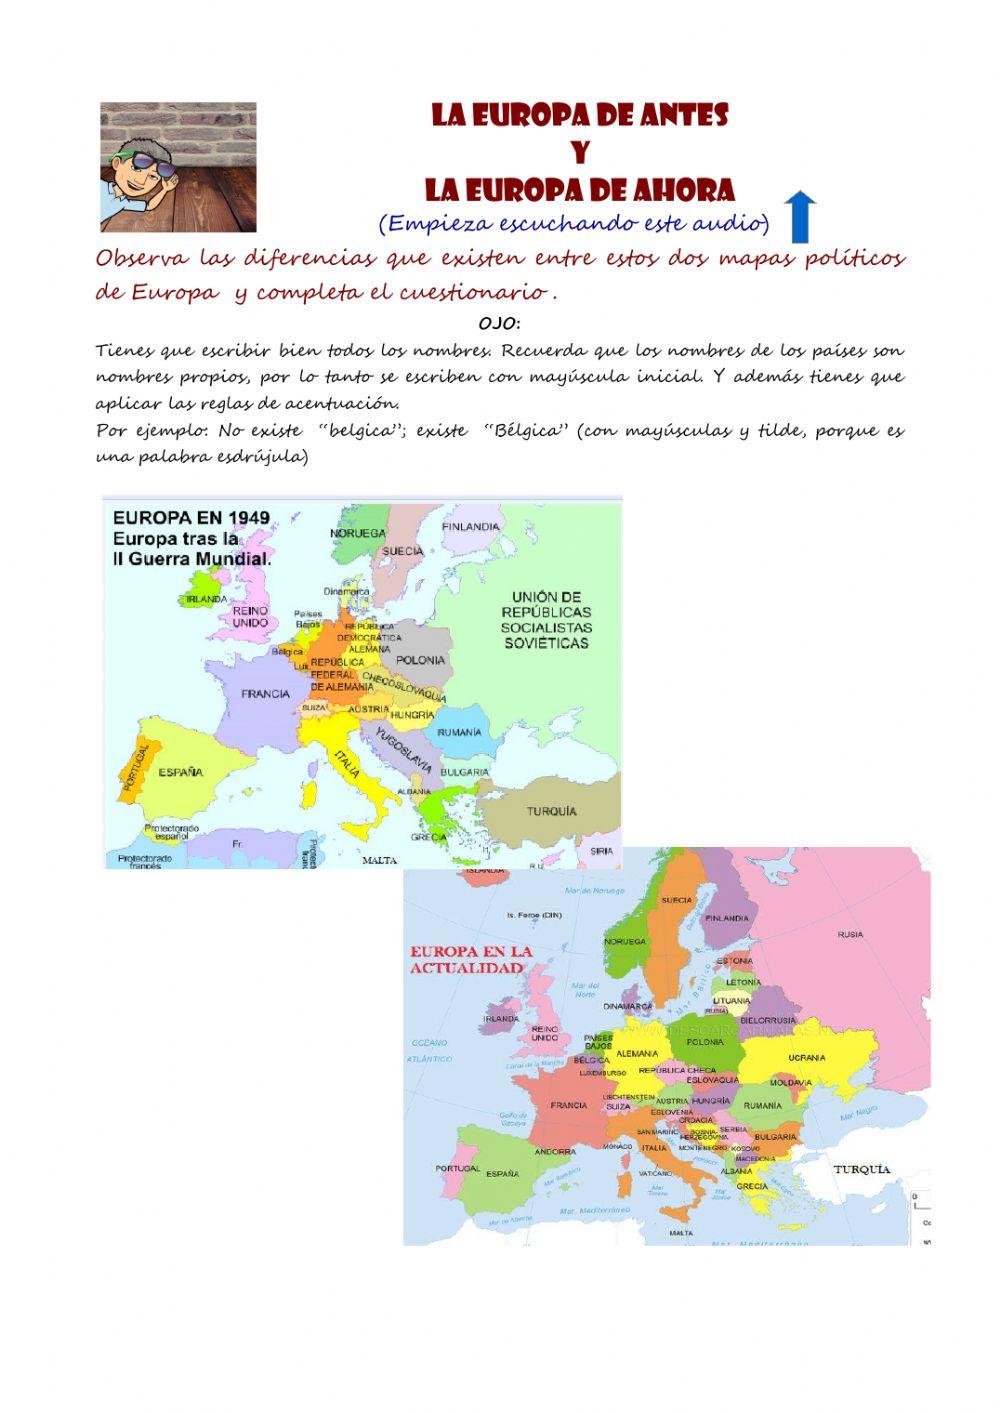 La Europa de antes y la Europa de ahora